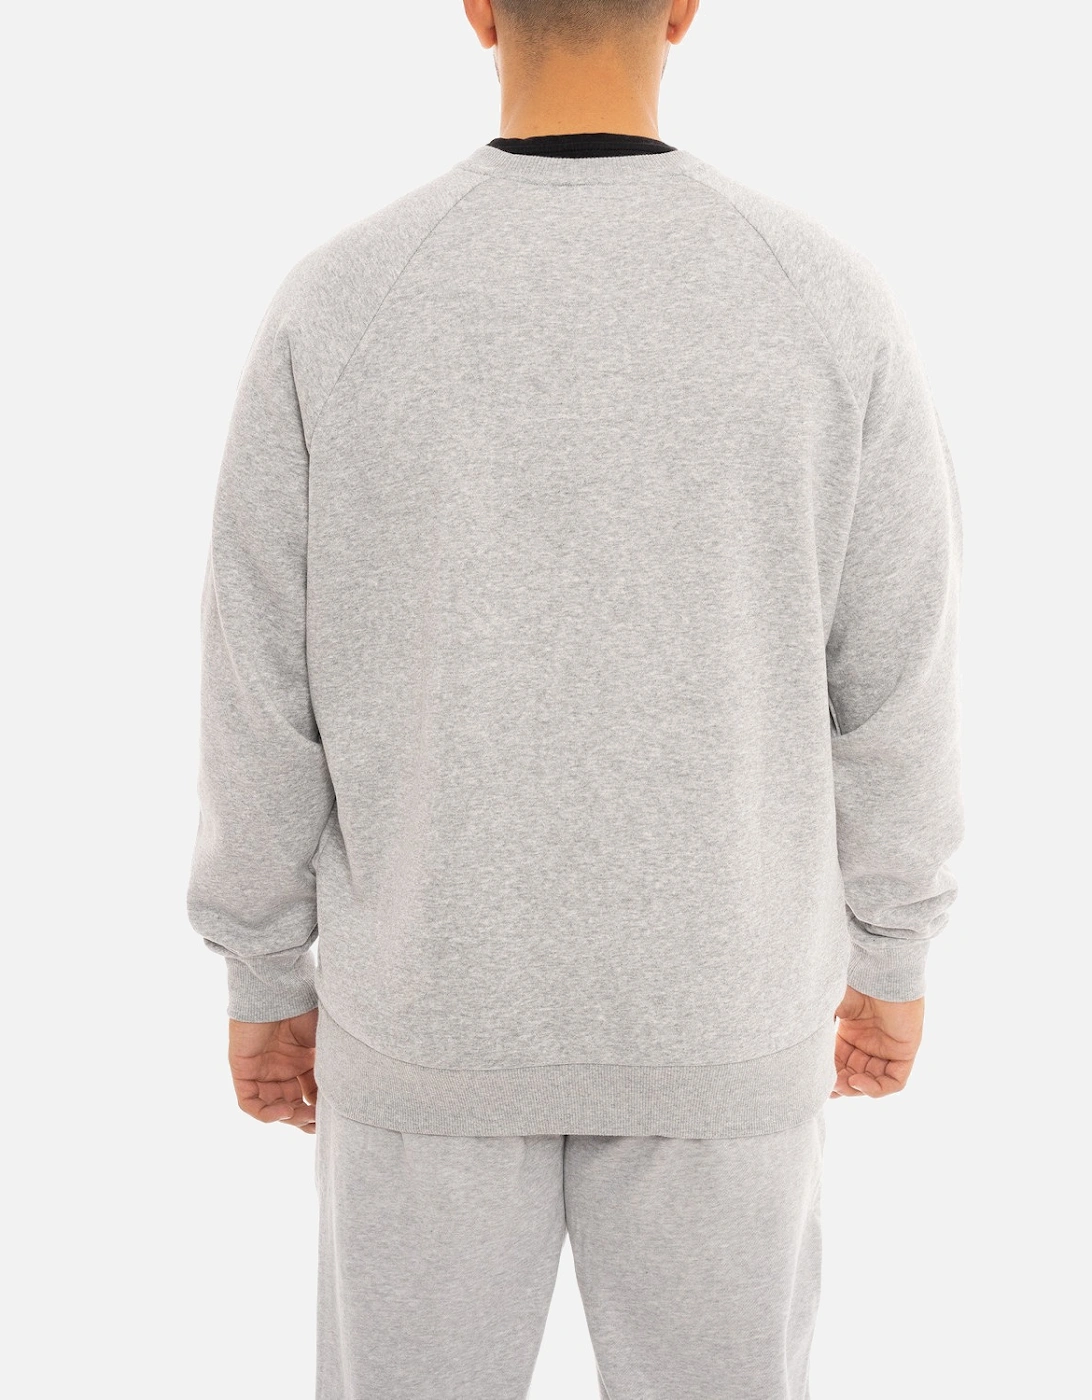 Mens Fleece Crew Sweatshirt (Light Grey)